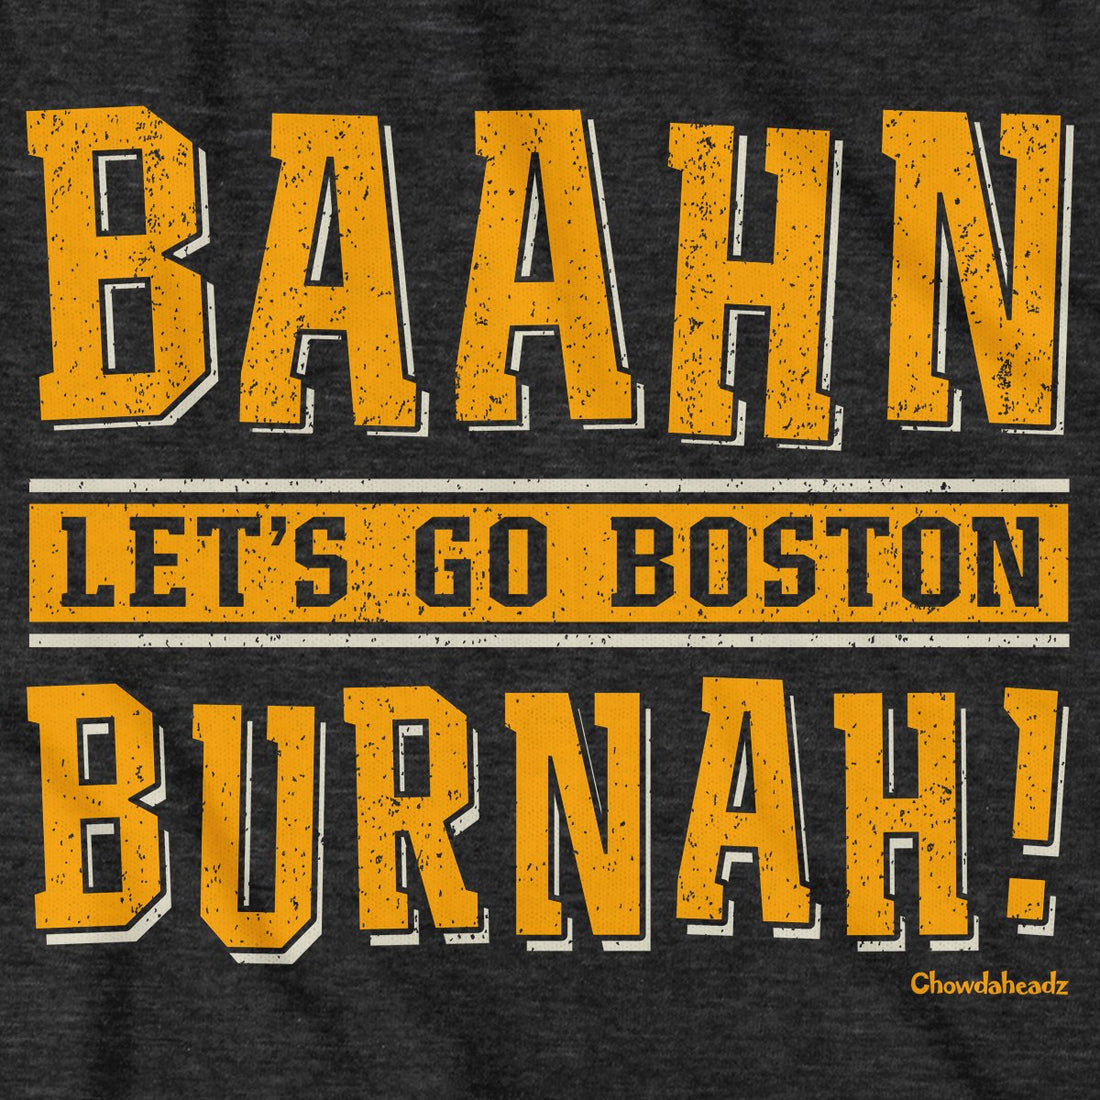 Baahn Burnah Boston Hockey T-Shirt - Chowdaheadz